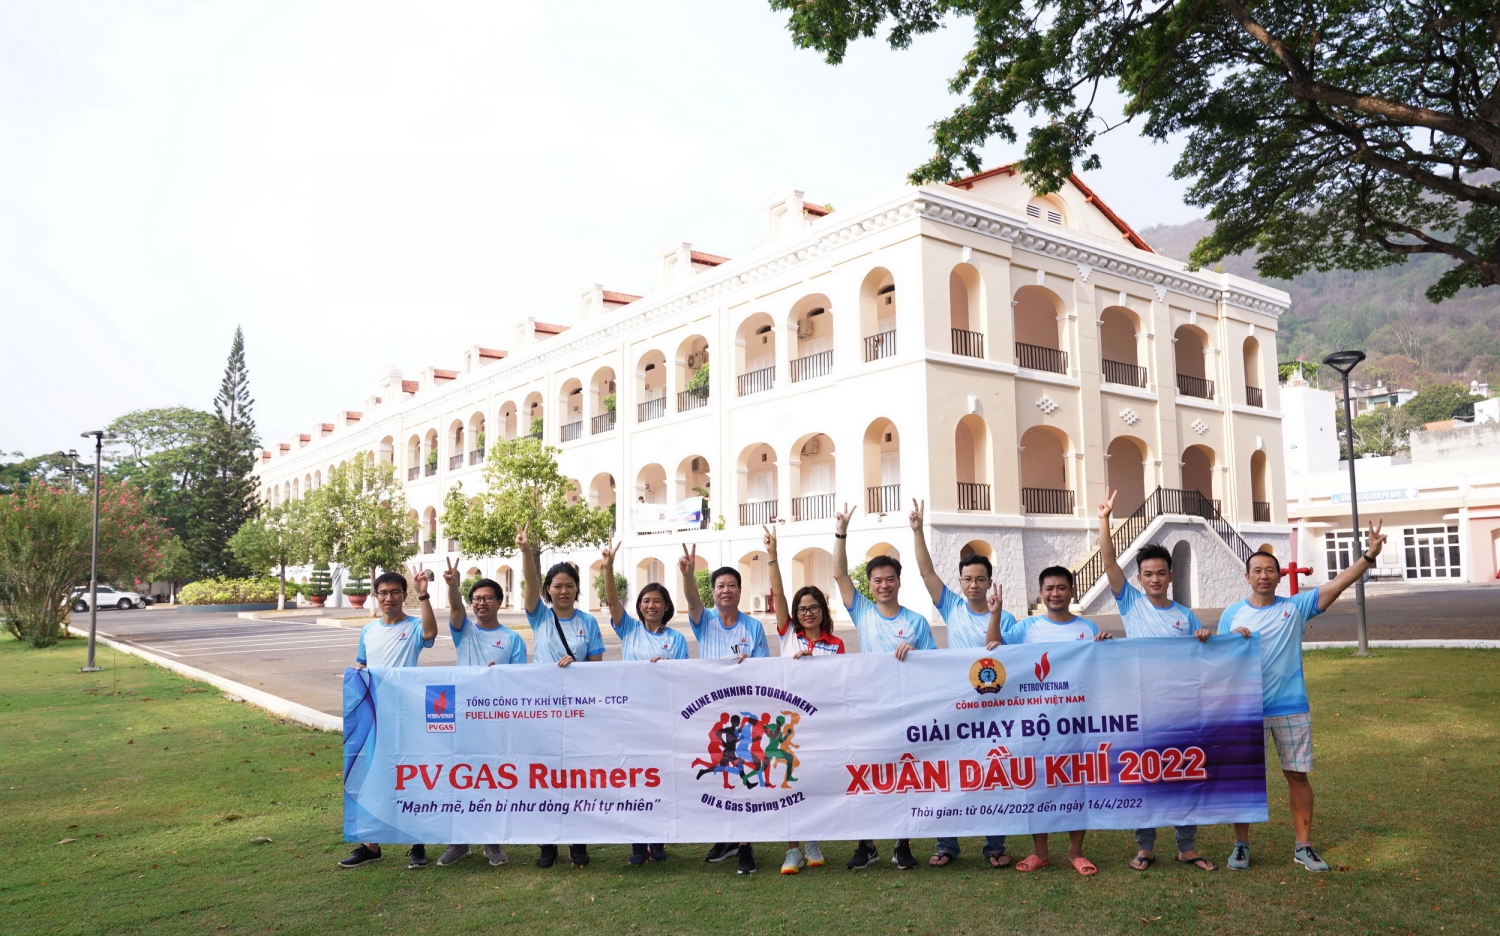 tinh than doan ket/ Đội tuyển PV GAS tích cực tham gia và giành được nhiều thành tích cao tại Giải chạy Xuân Dầu khí 2022